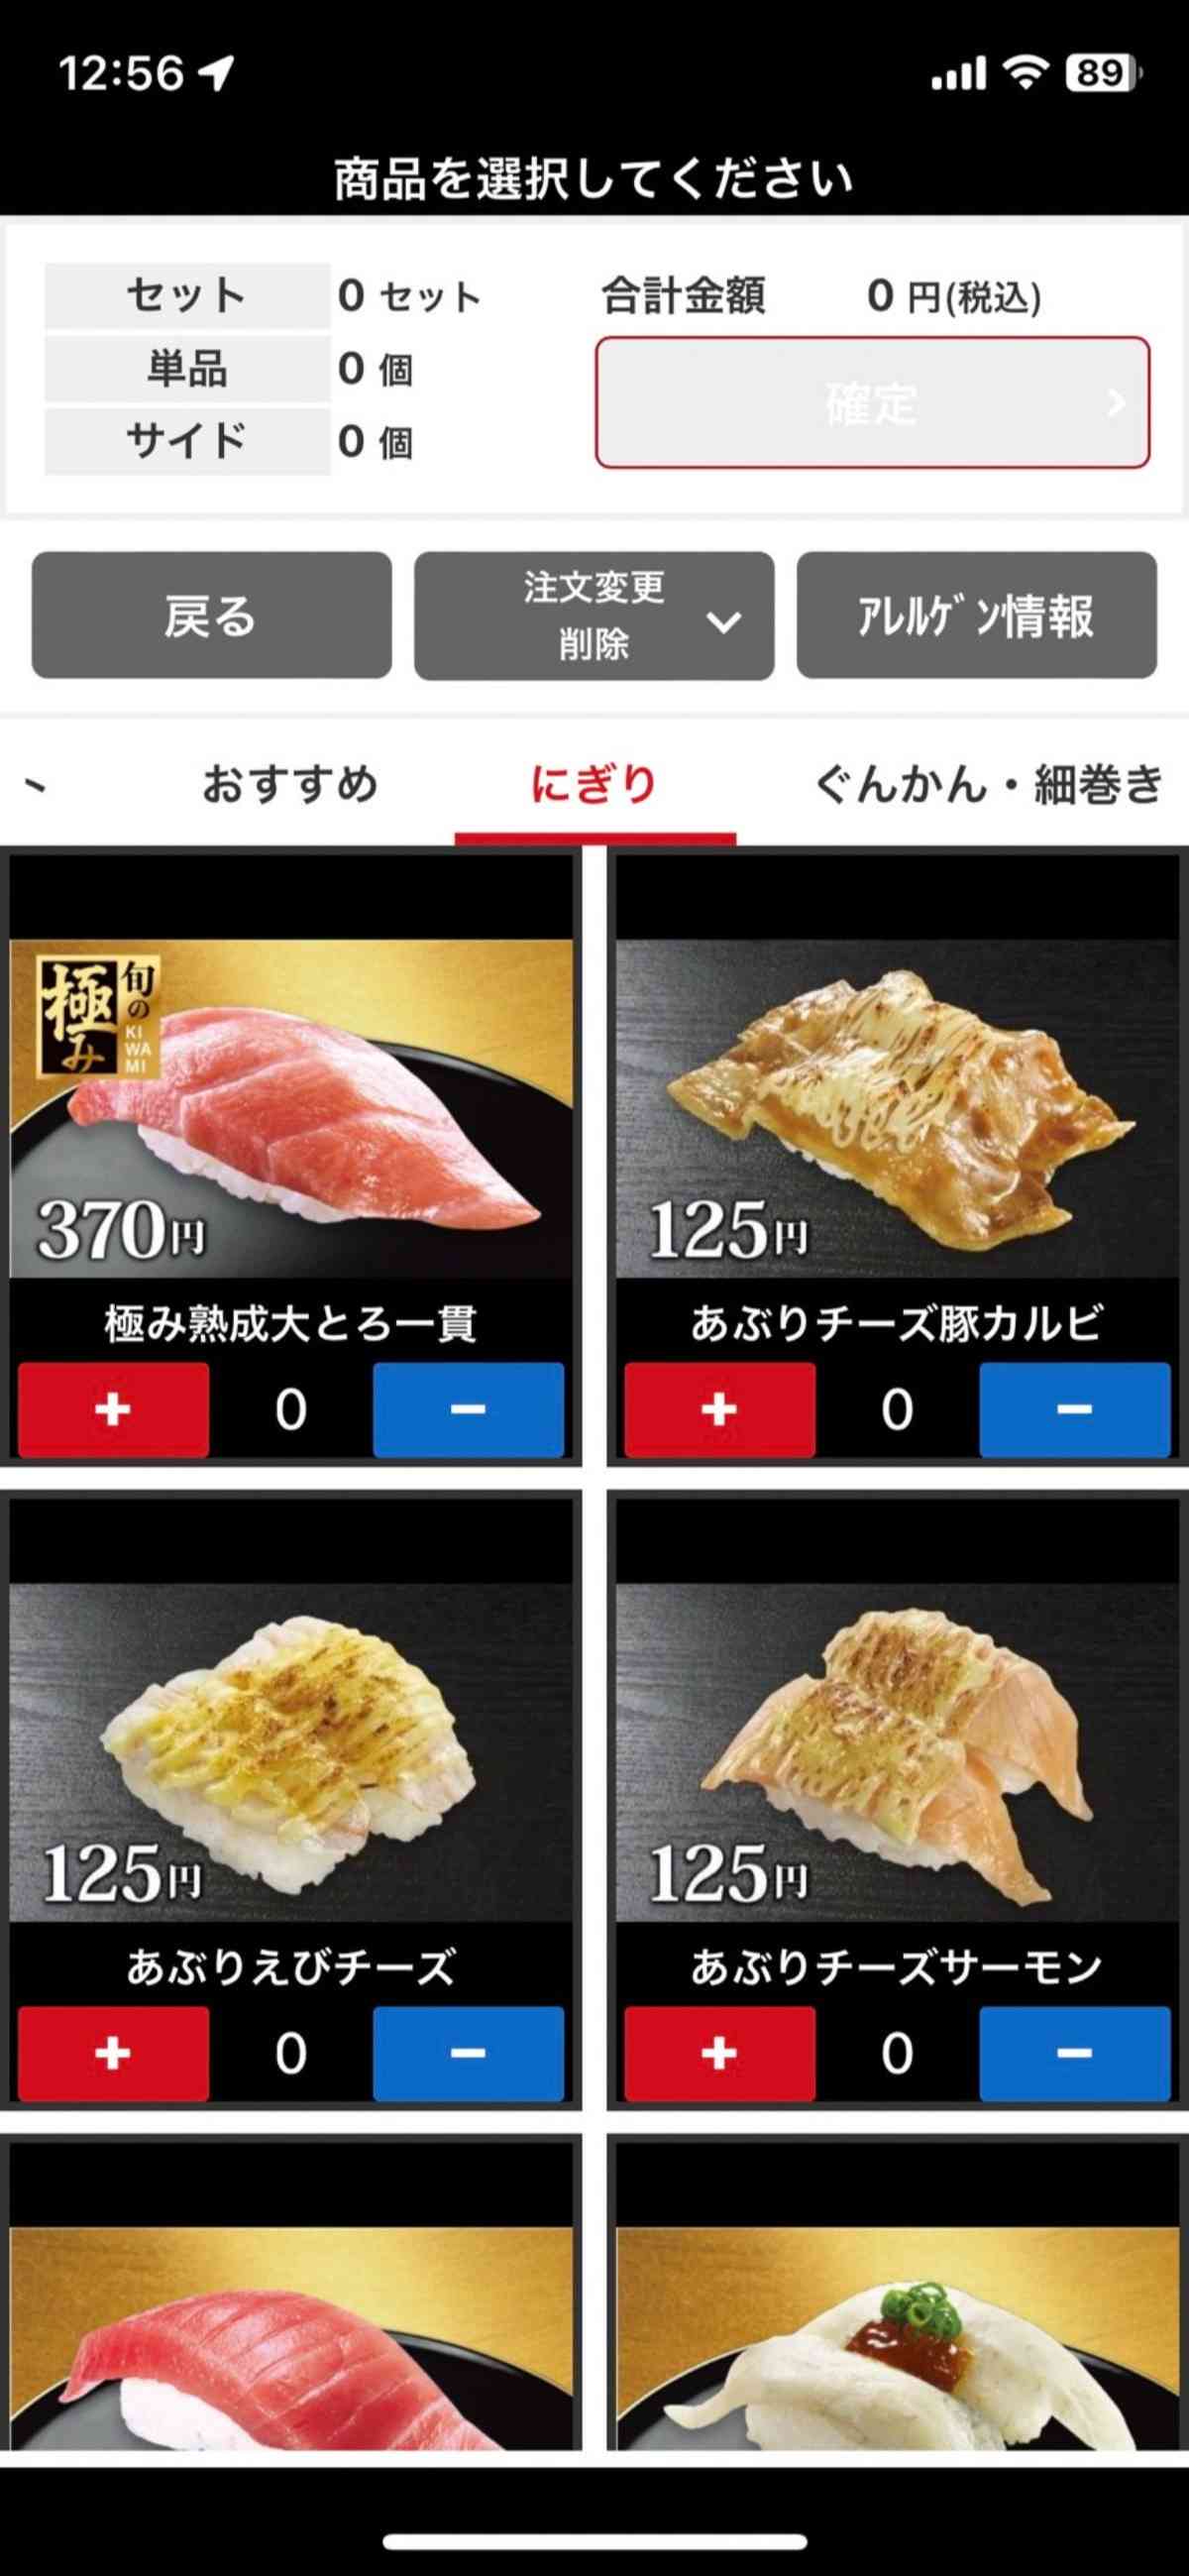 くら寿司アプリ内で位置情報をオンにすると、現在地から近い店舗の候補をリストアップされ、